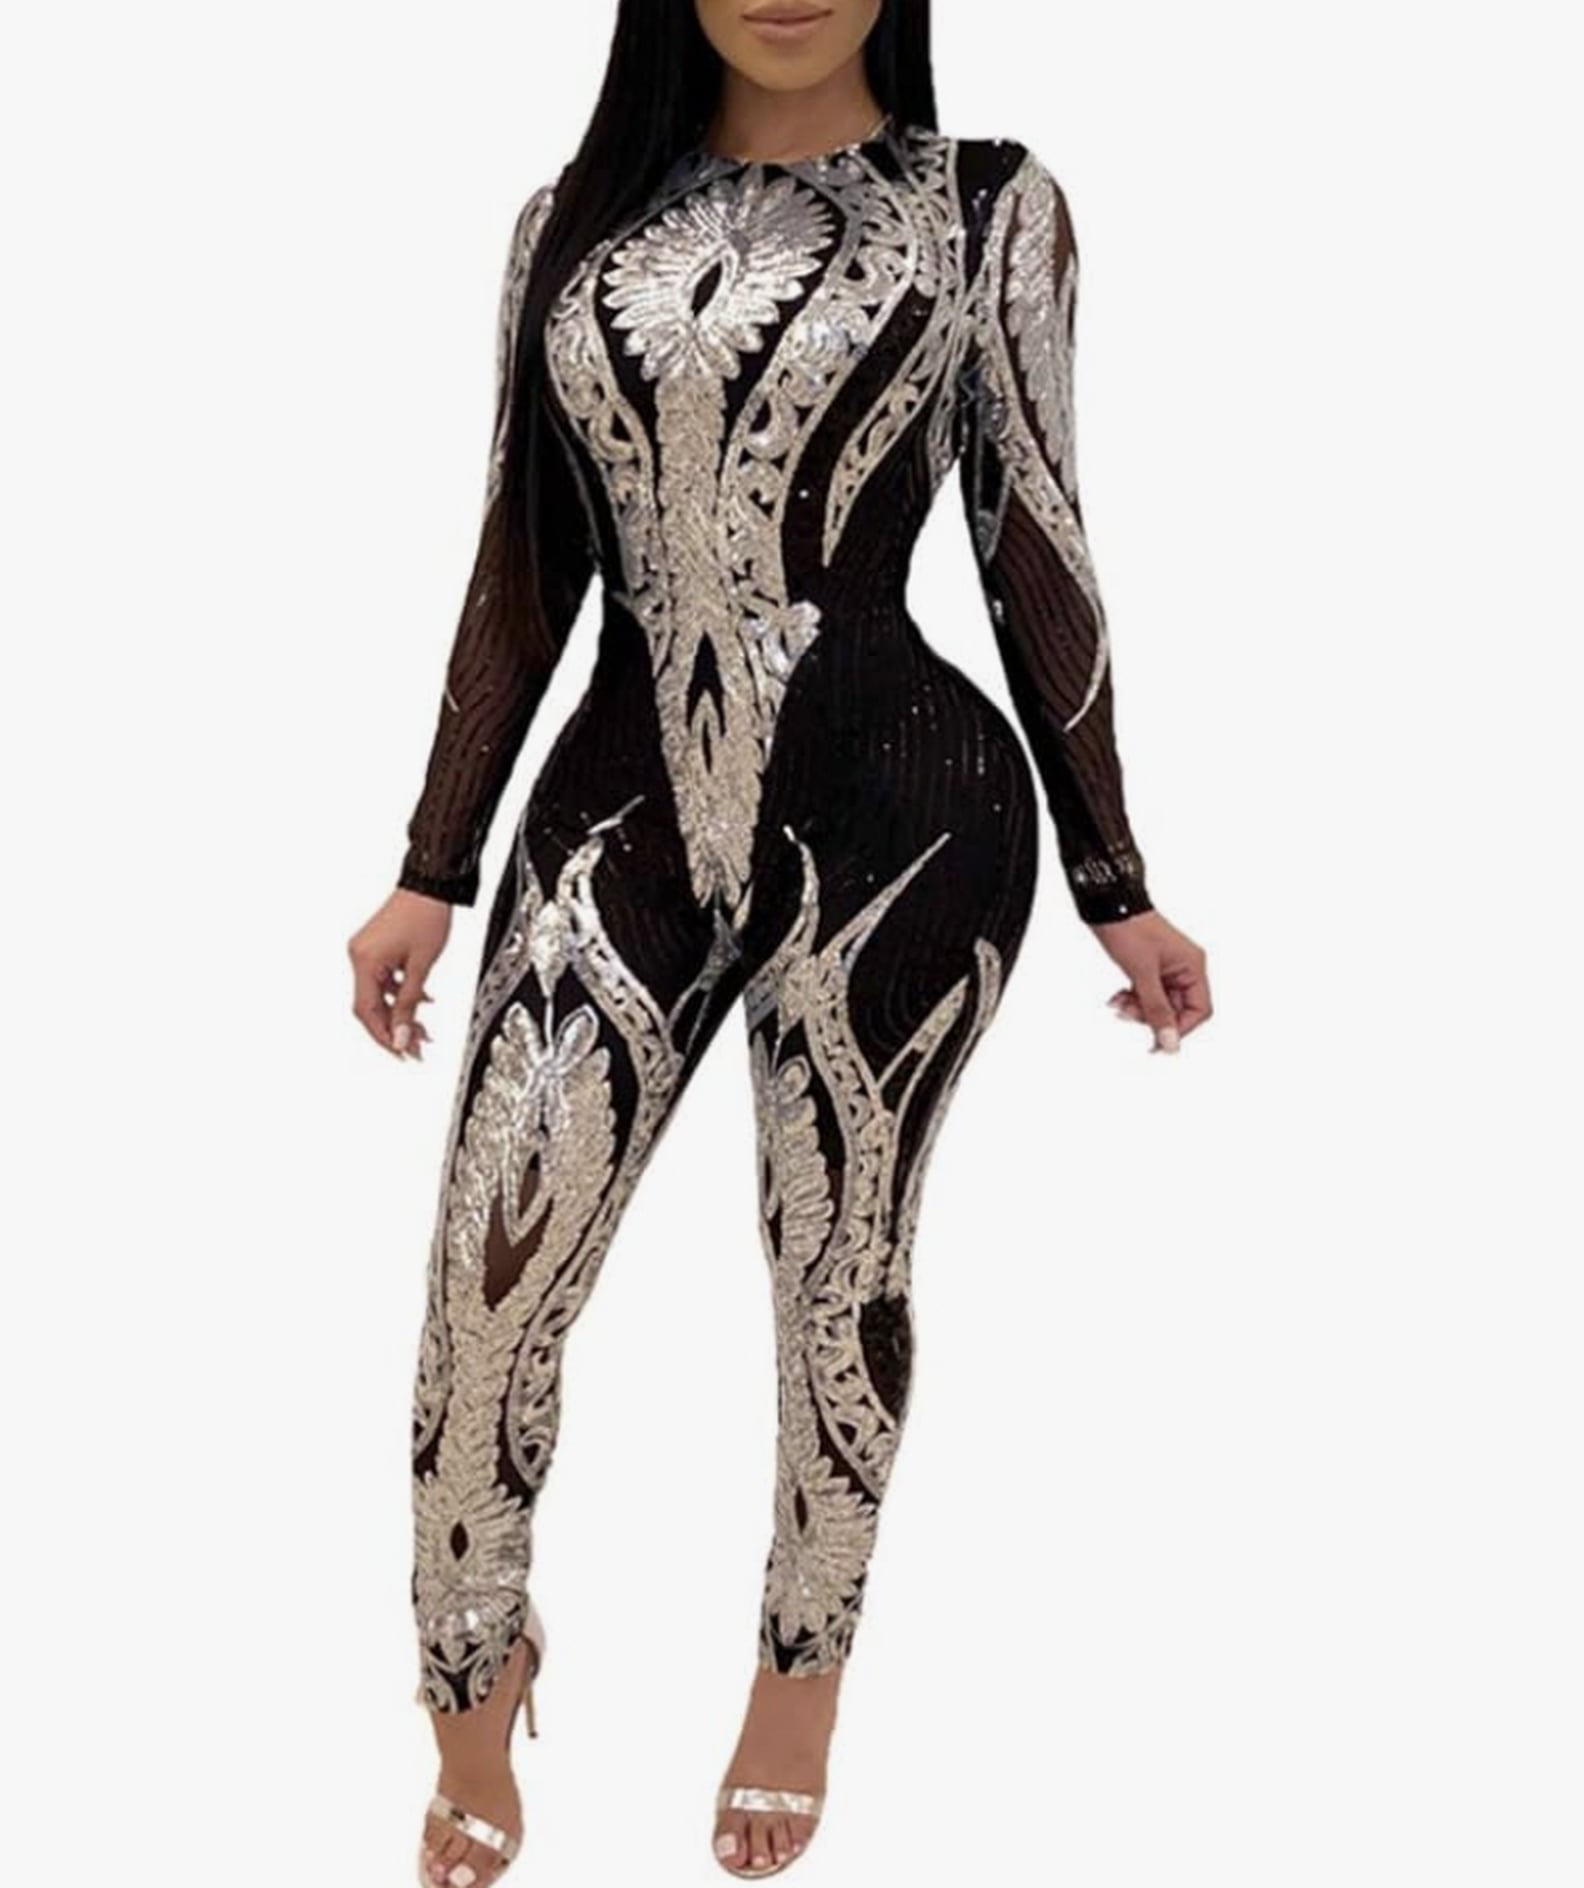 Beyoncé Concert Outfit Ideas For the 